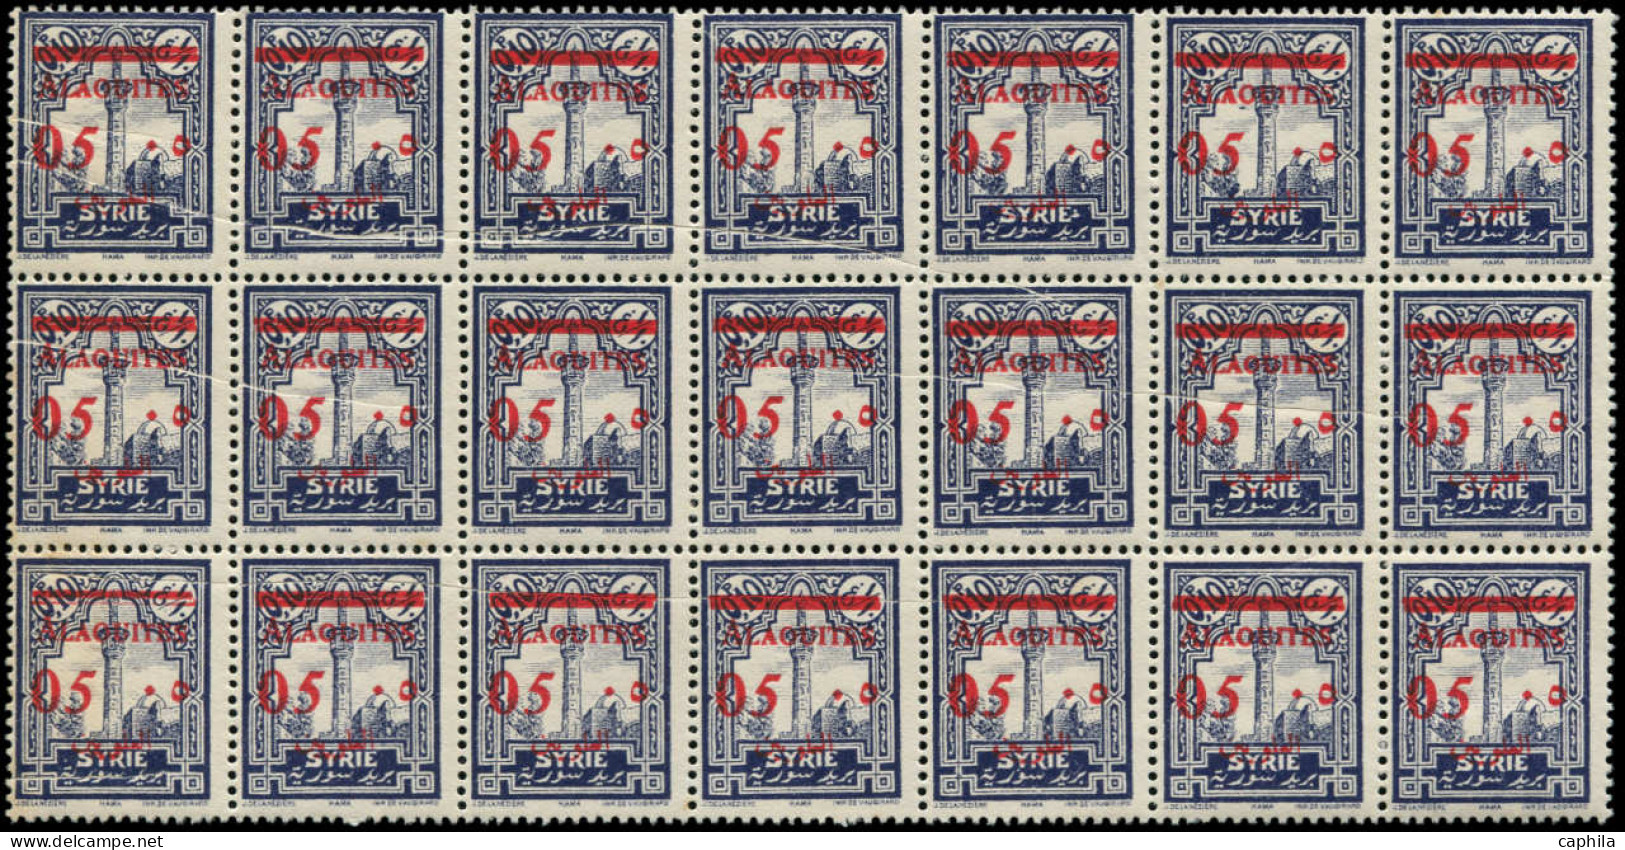 ** ALAOUITES - Poste - 41, Bloc De 21, Plis Accordéons Multiples - Unused Stamps